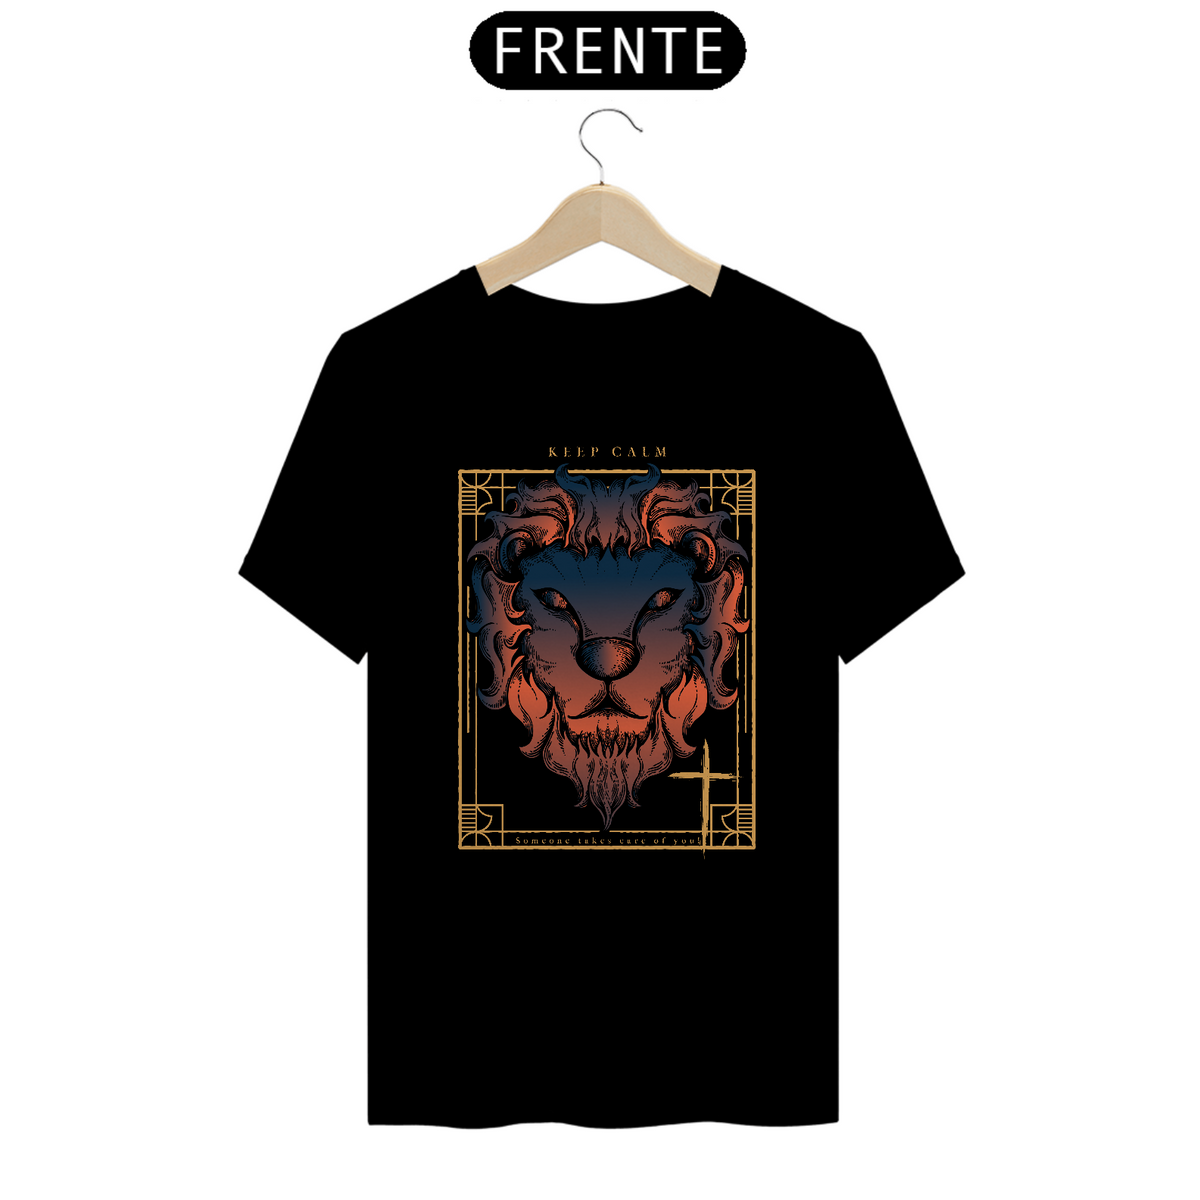 Nome do produto: T-shirt KeepCalm Lion Excaravelho